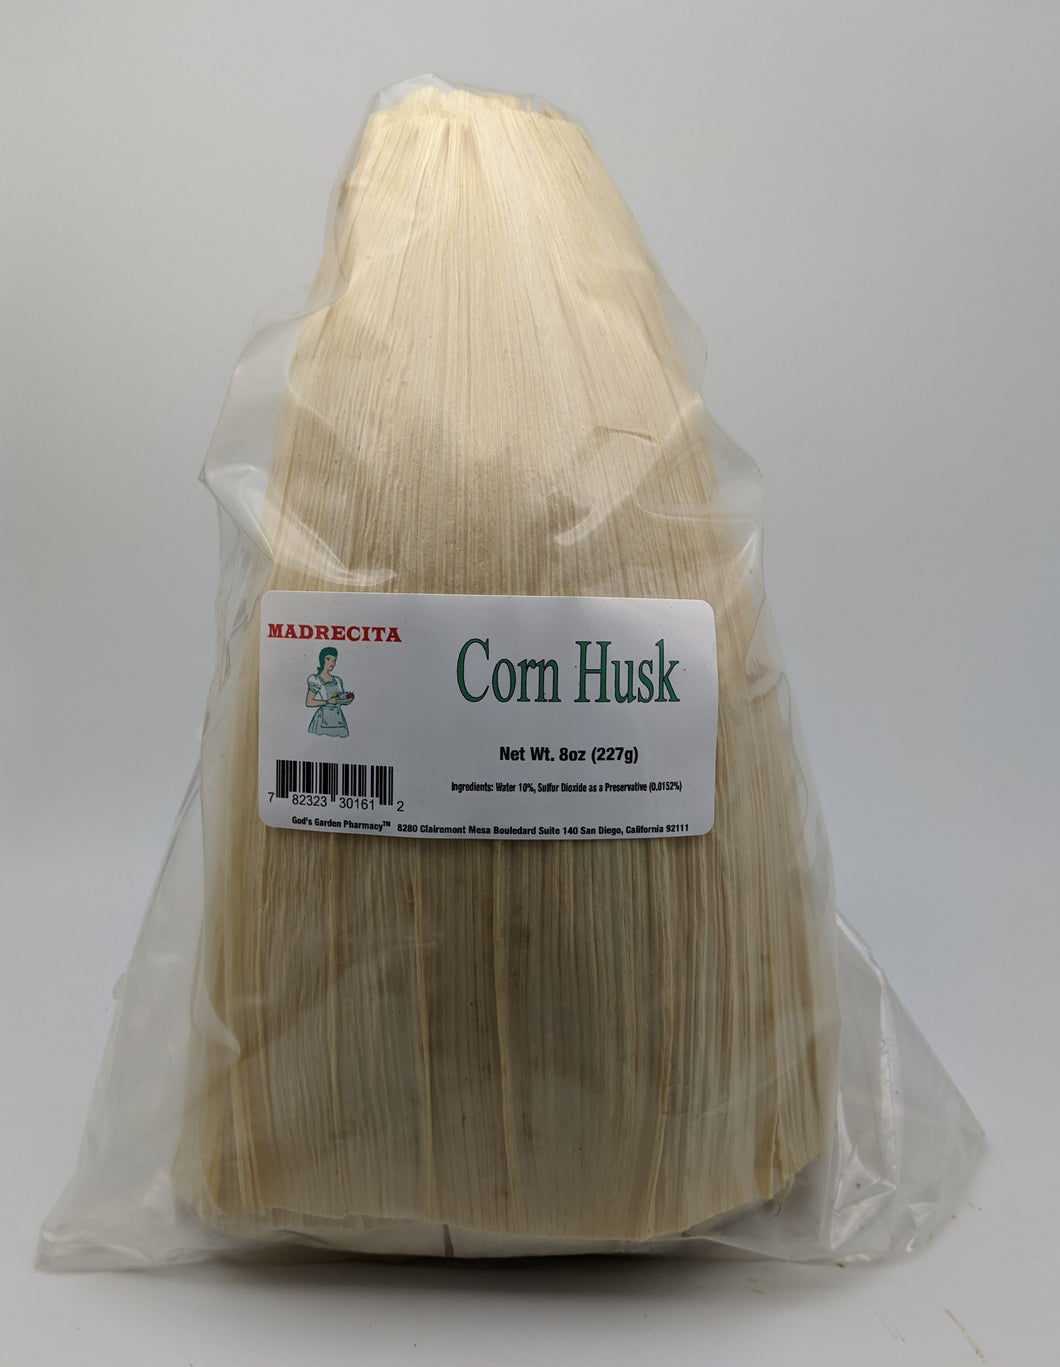 Corn Husk – God's Garden Pharmacy